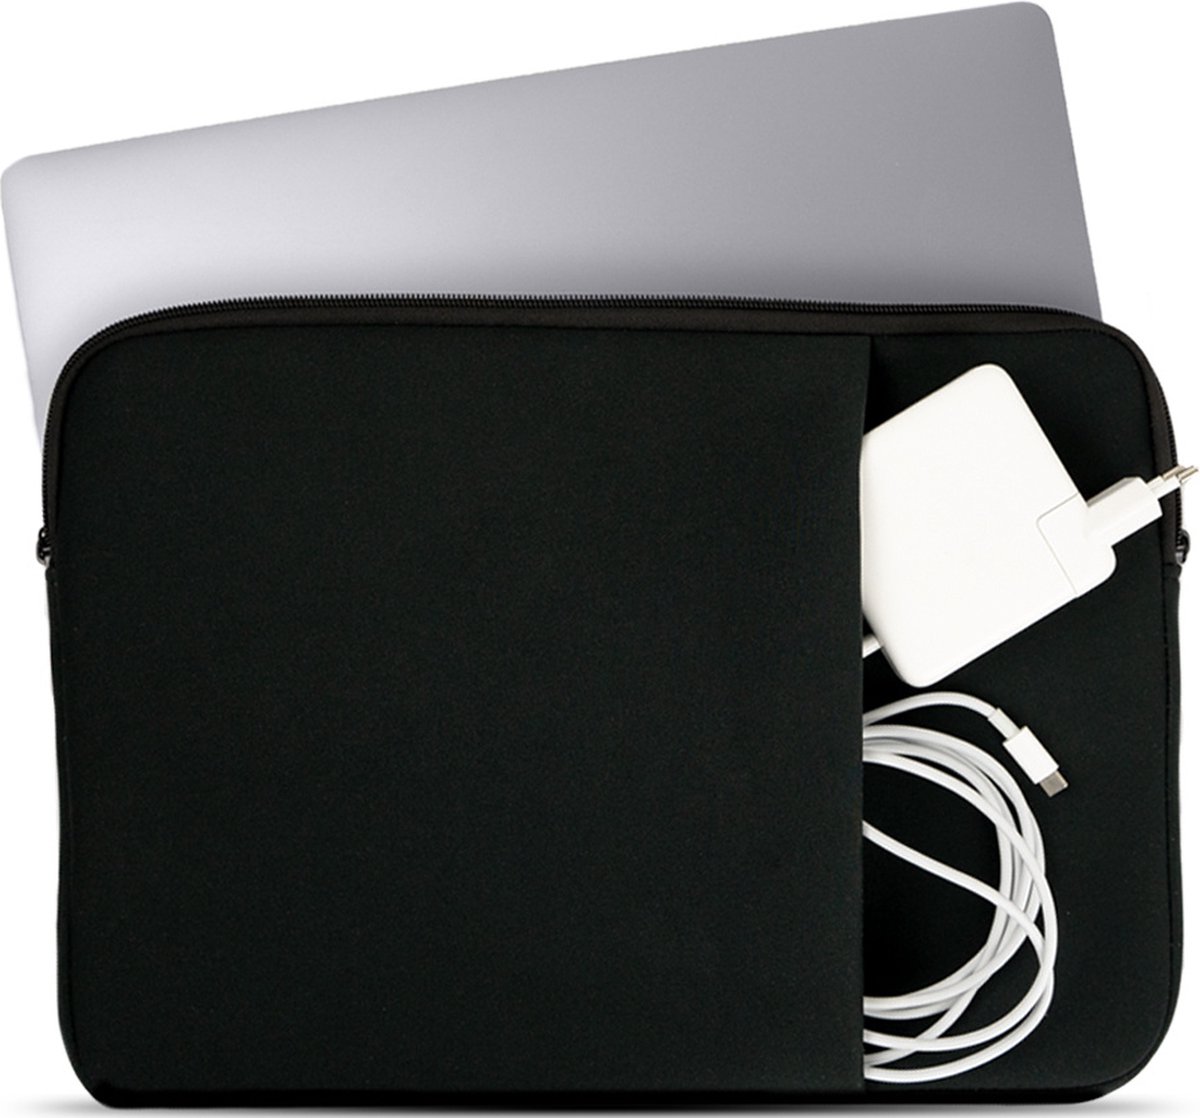 Coverzs Laptophoes 13 inch & 14 inch (zwart) - Laptoptas dames / heren geschikt voor o.a. 13 inch laptop en 14 Inch laptop - Macbook hoes met ritssluiting - waterafstotende hoes - Coverzs